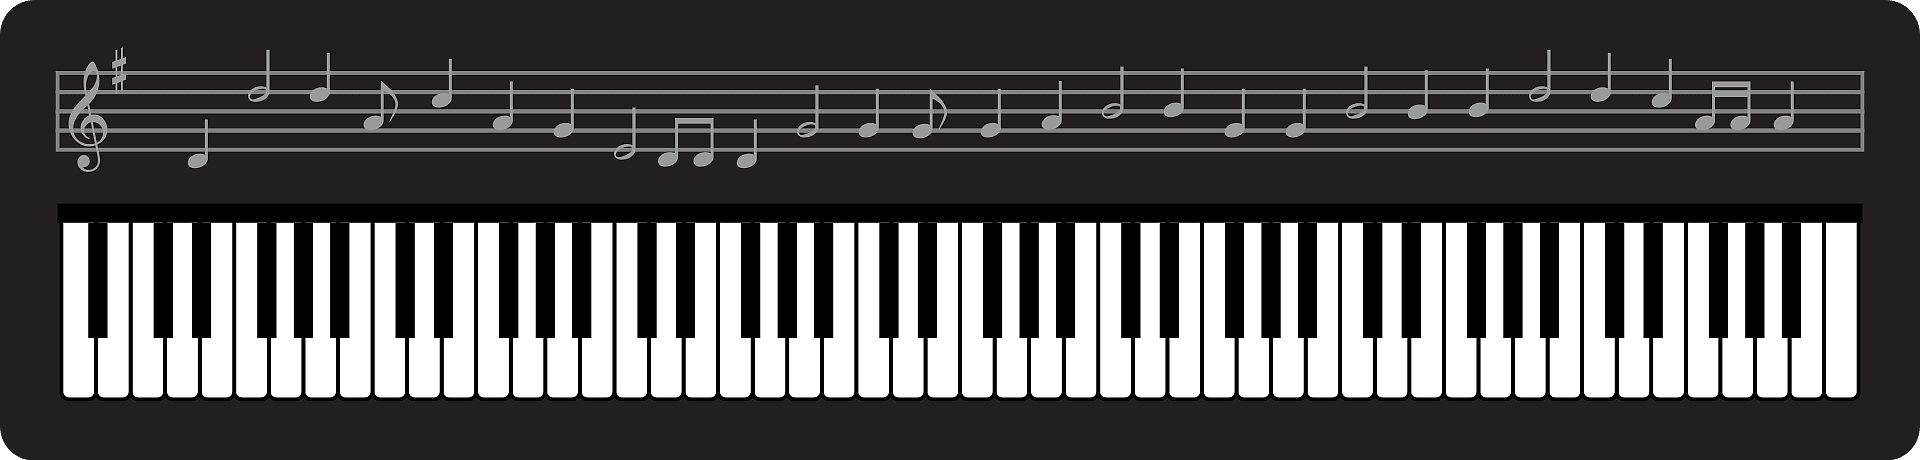 ピアノ鍵盤イラスト透明1 イラスト